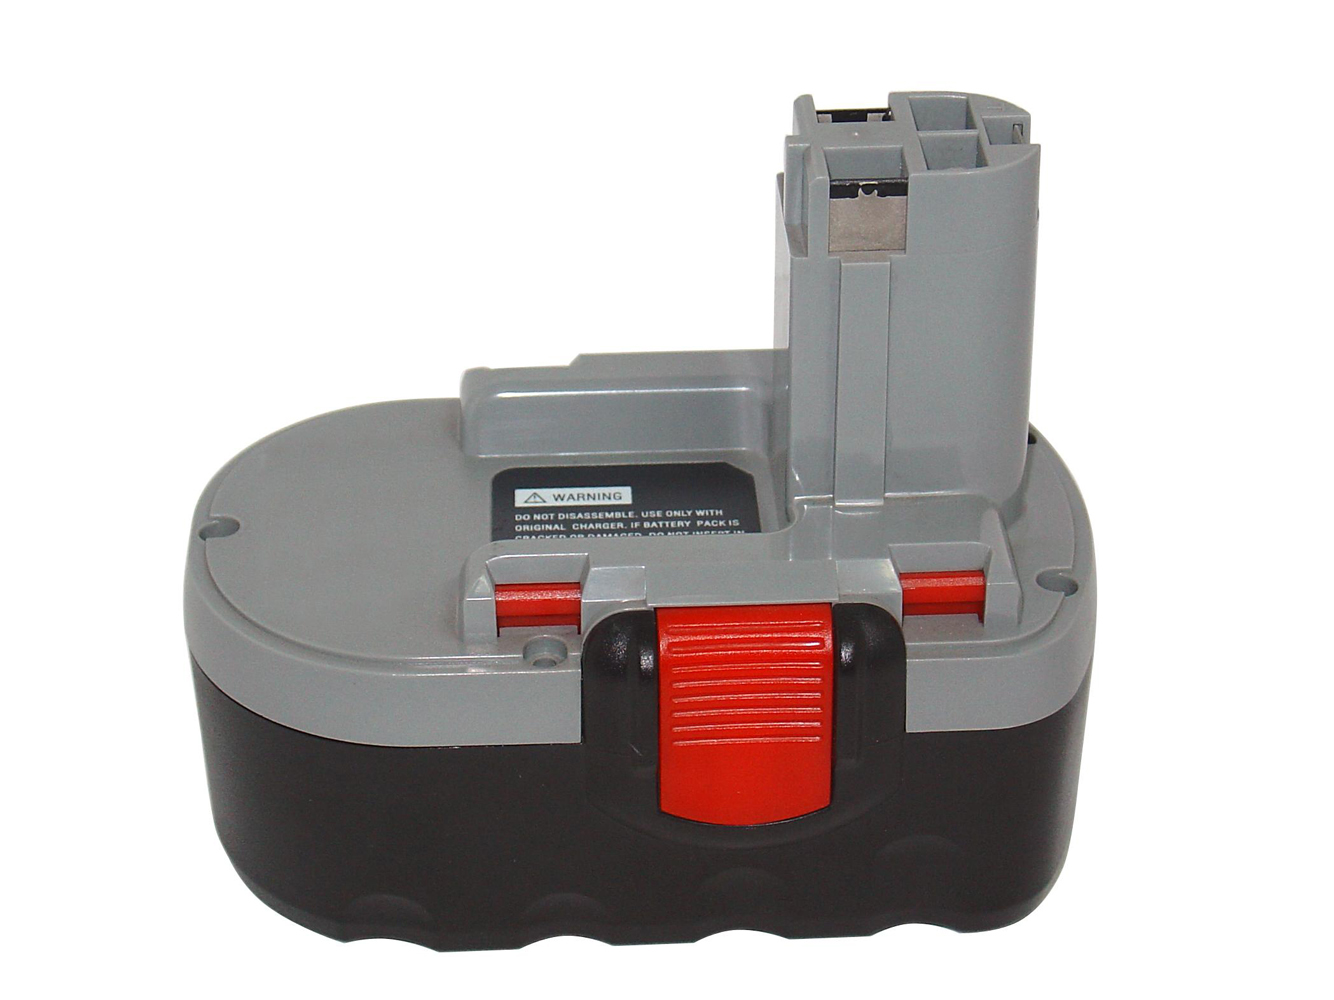 Remplacement compatible pour batterie d'outils BOSCH 13618, 13618-2G, 1644, 15618, 1644-24, 1644B-24